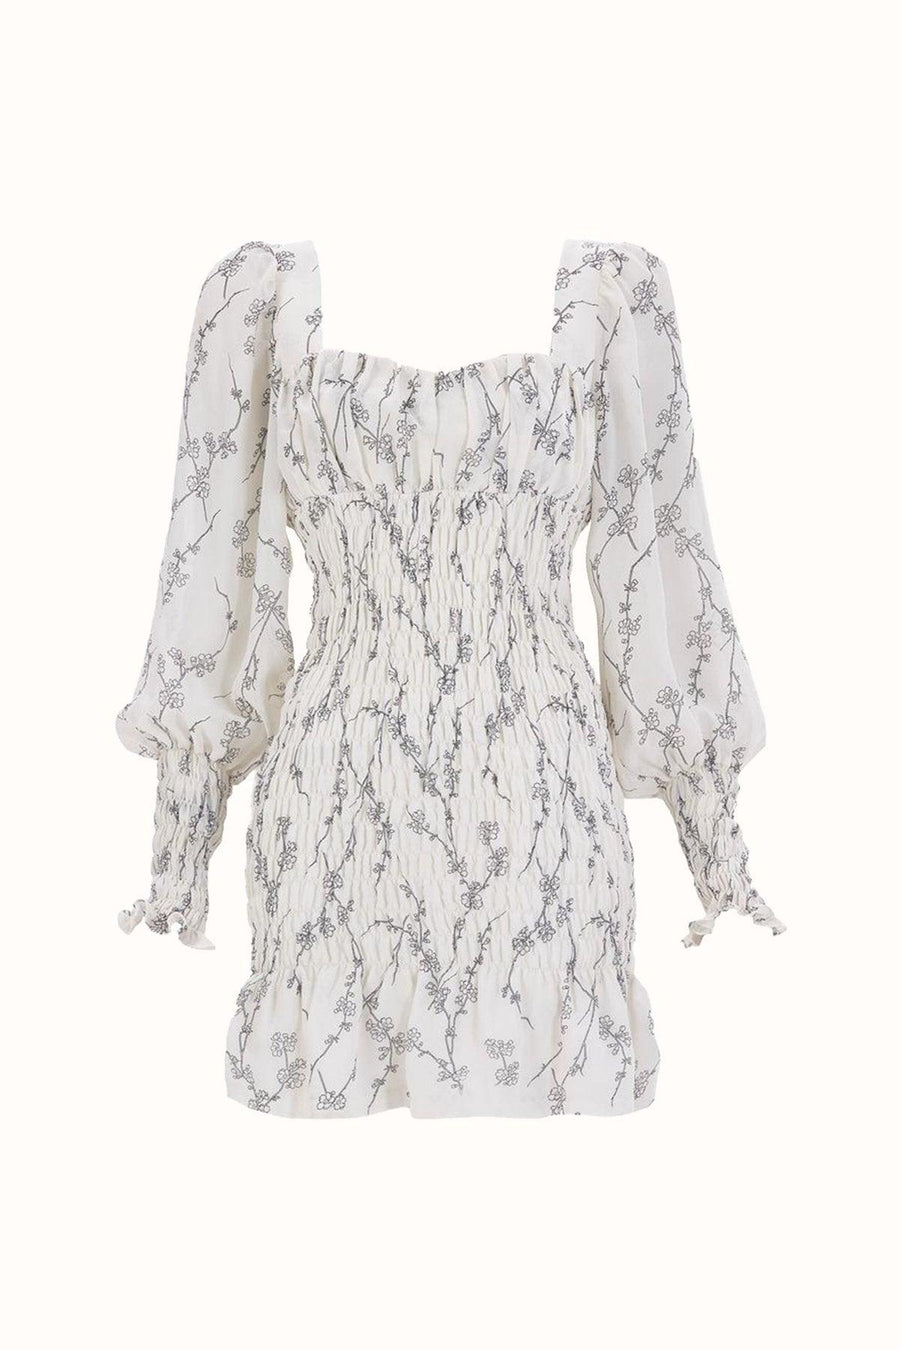 Zella Elbise / Beyaz Çiçekli - NAIA ISTANBUL Shop Online